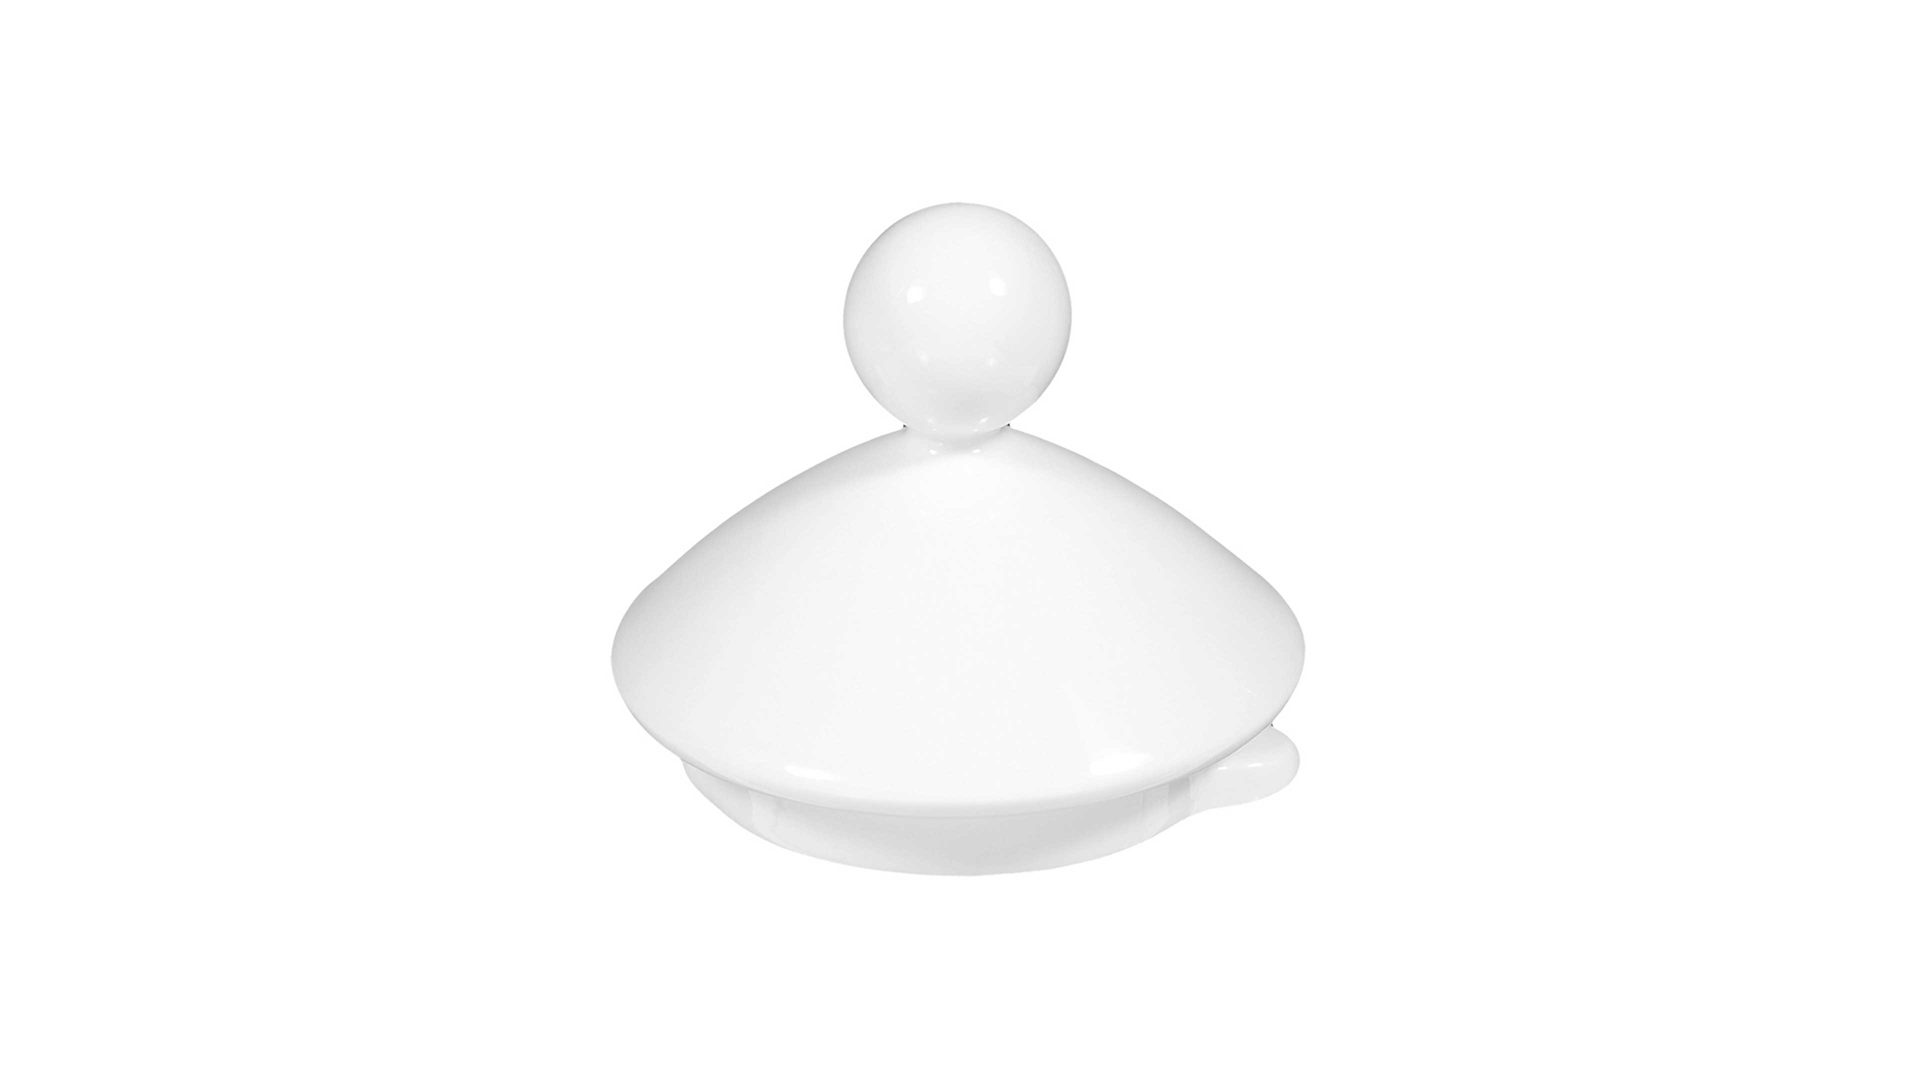 Deckel Seltmann aus Porzellan in Weiß Seltmann Lido – Zuckerdosen-Deckel weißes Porzellan